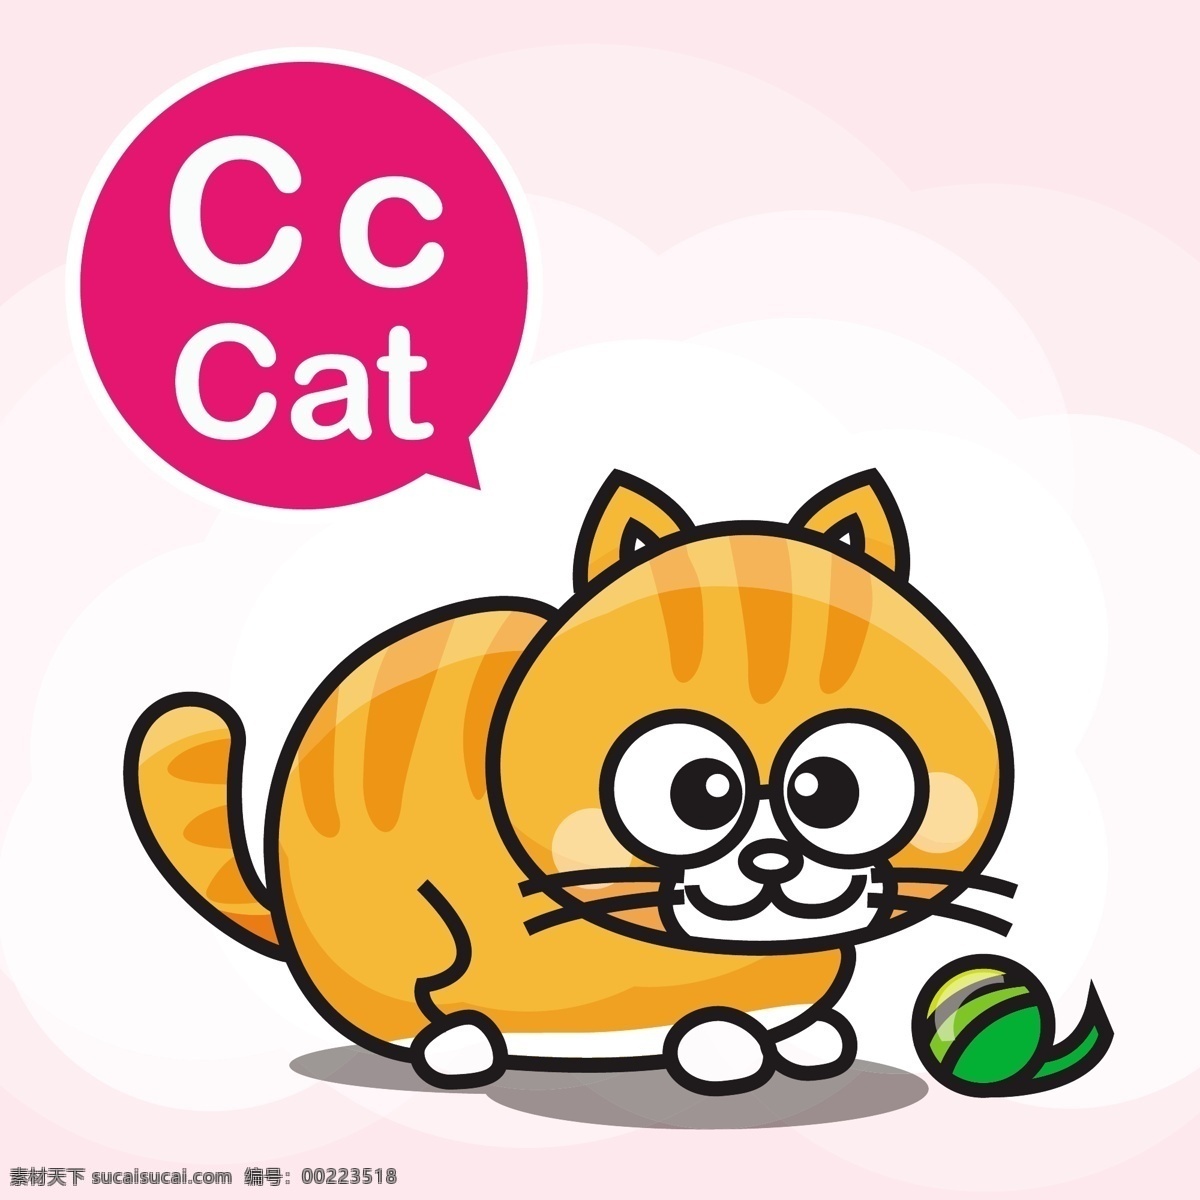 猫咪 通 小 动物 矢量 背景 cat 英语 幼儿园 教学 学习 卡牌 卡通 手绘 形象